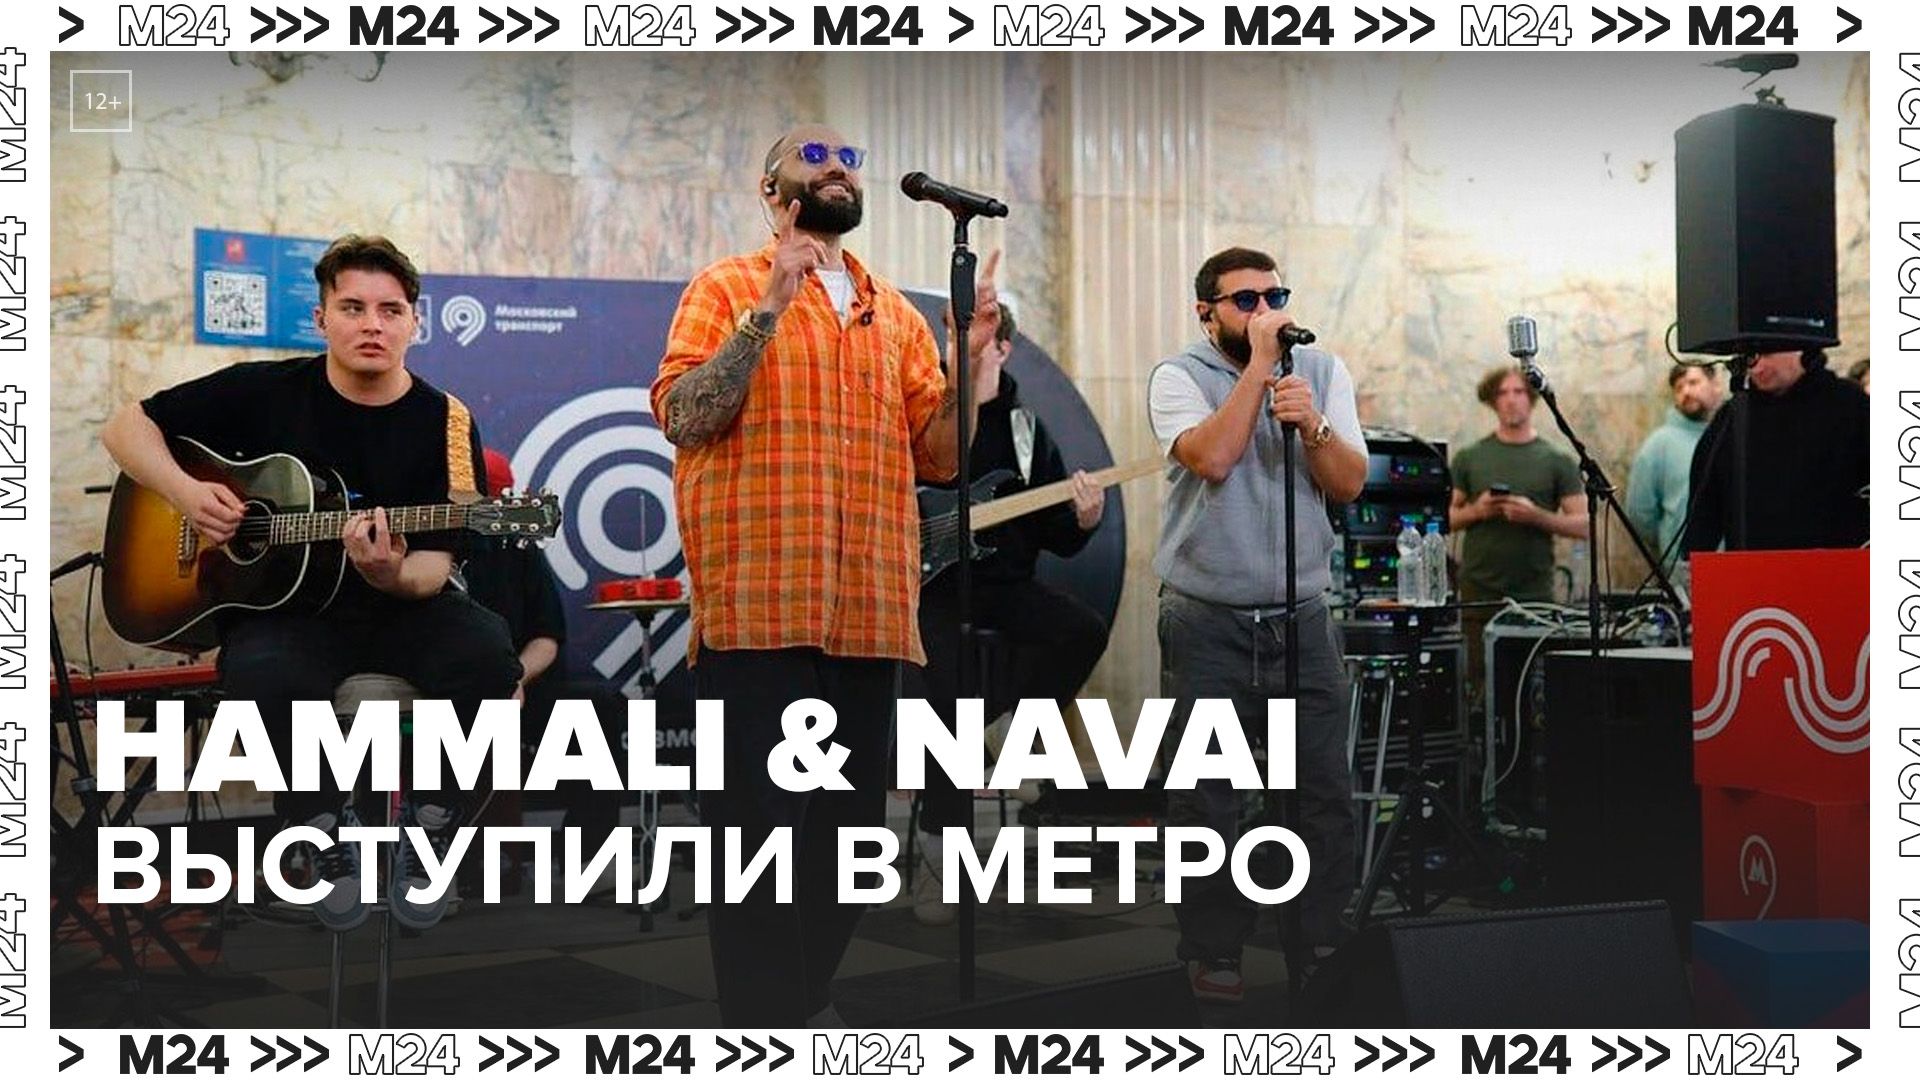 Рэперы HammAli & Navai выступили на станции метро "Таганская"